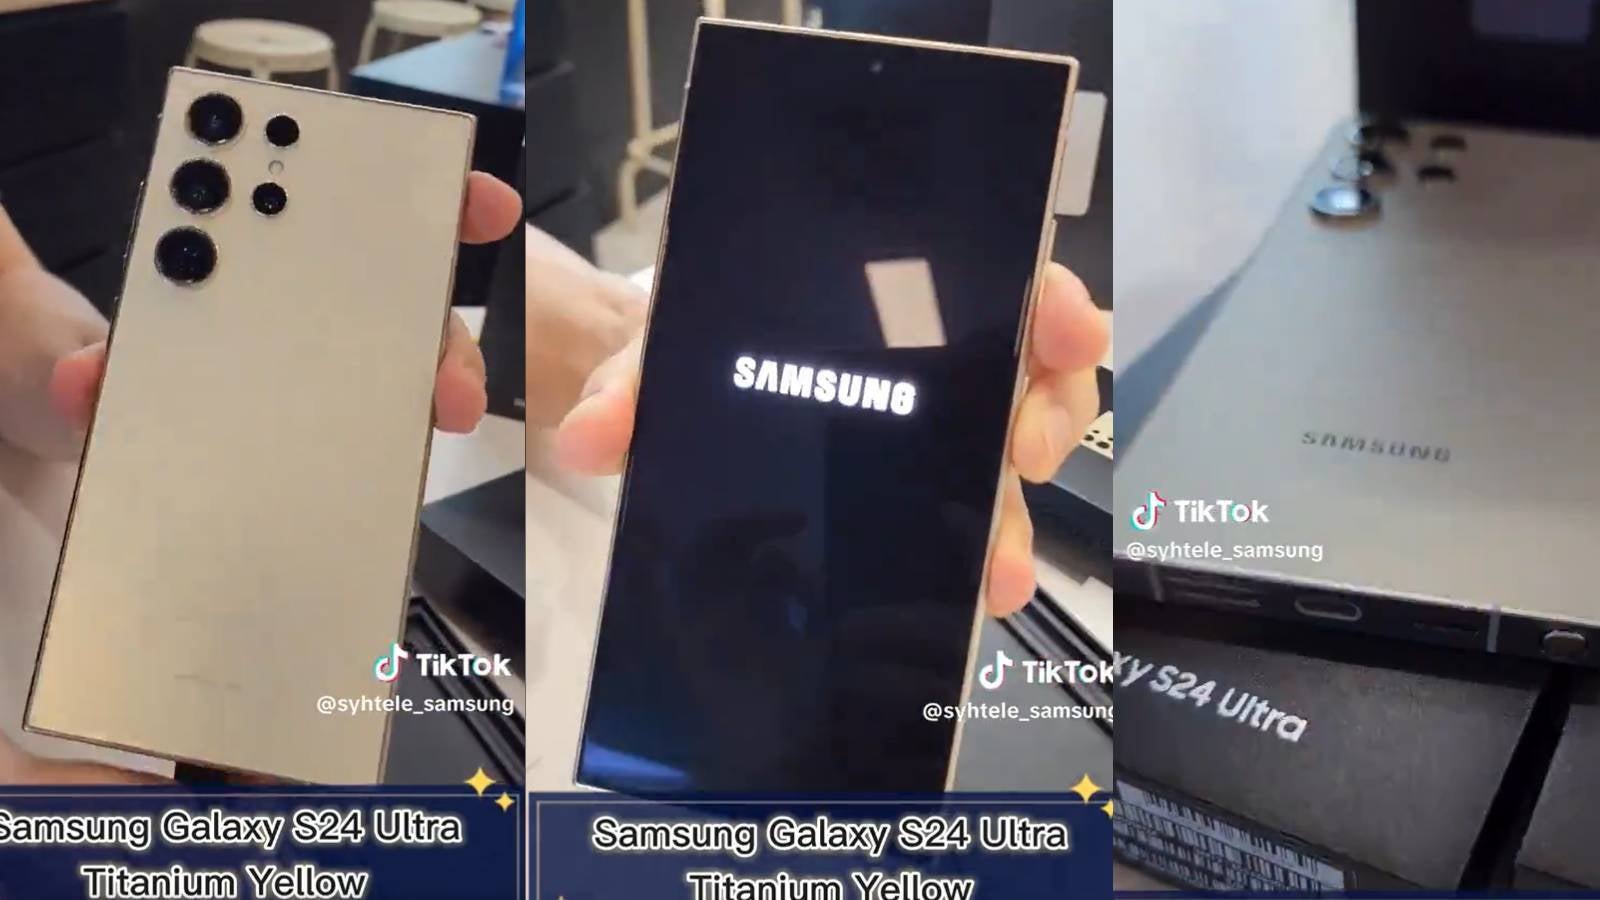 X kullanıcısı Galaxy S24 Ultra'nın üç renkli kutu açılış videosunu yayınlarken ateşle oynuyor